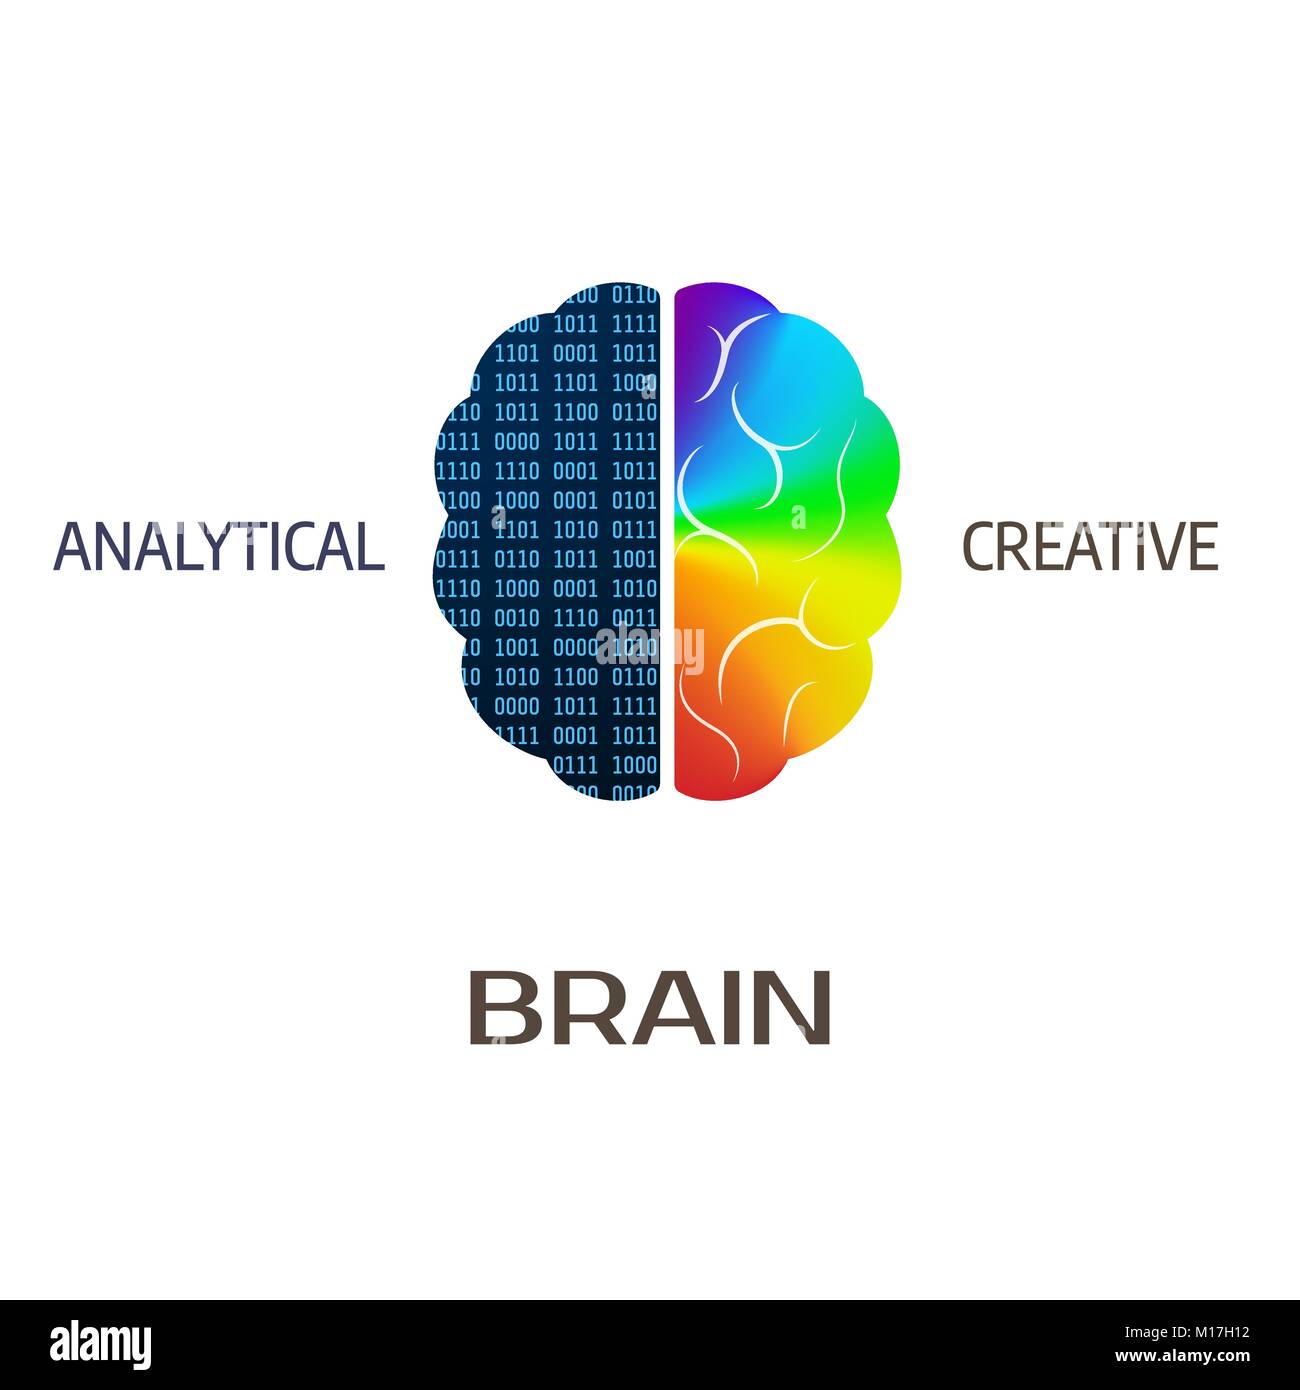 Gehirn-Symbol. Linkes Gehirn teil - Analytische. Mit der rechten Hemisphäre des Gehirns - kreativ. Vector Illustration Stock Vektor